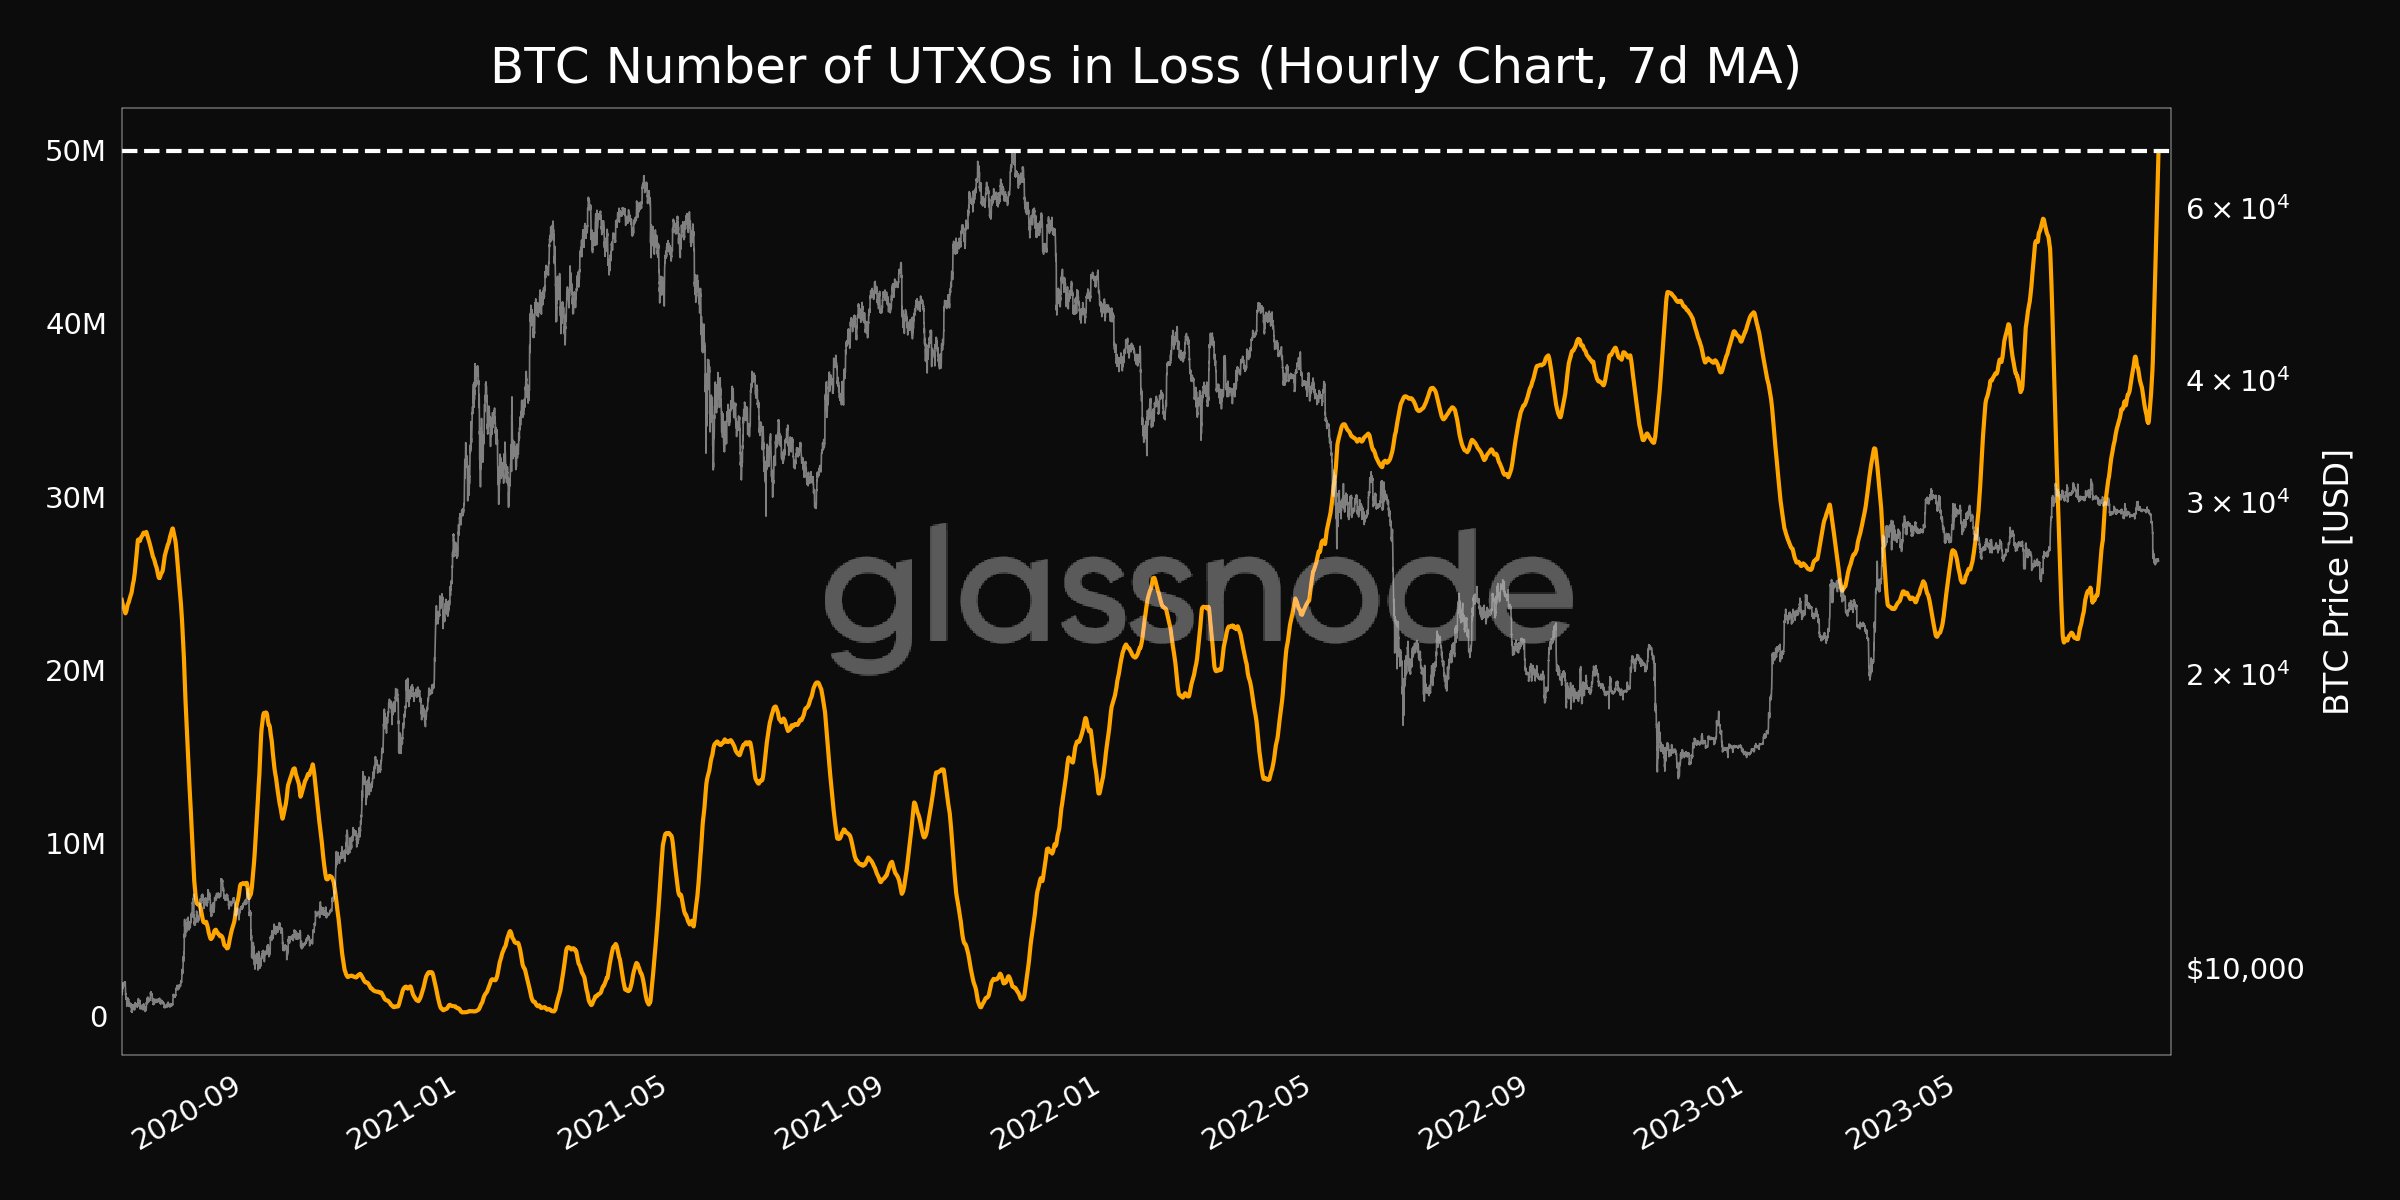 نمودار میانگین ۷ روزه UTXOهای در ضرر - منبع: Glassnode